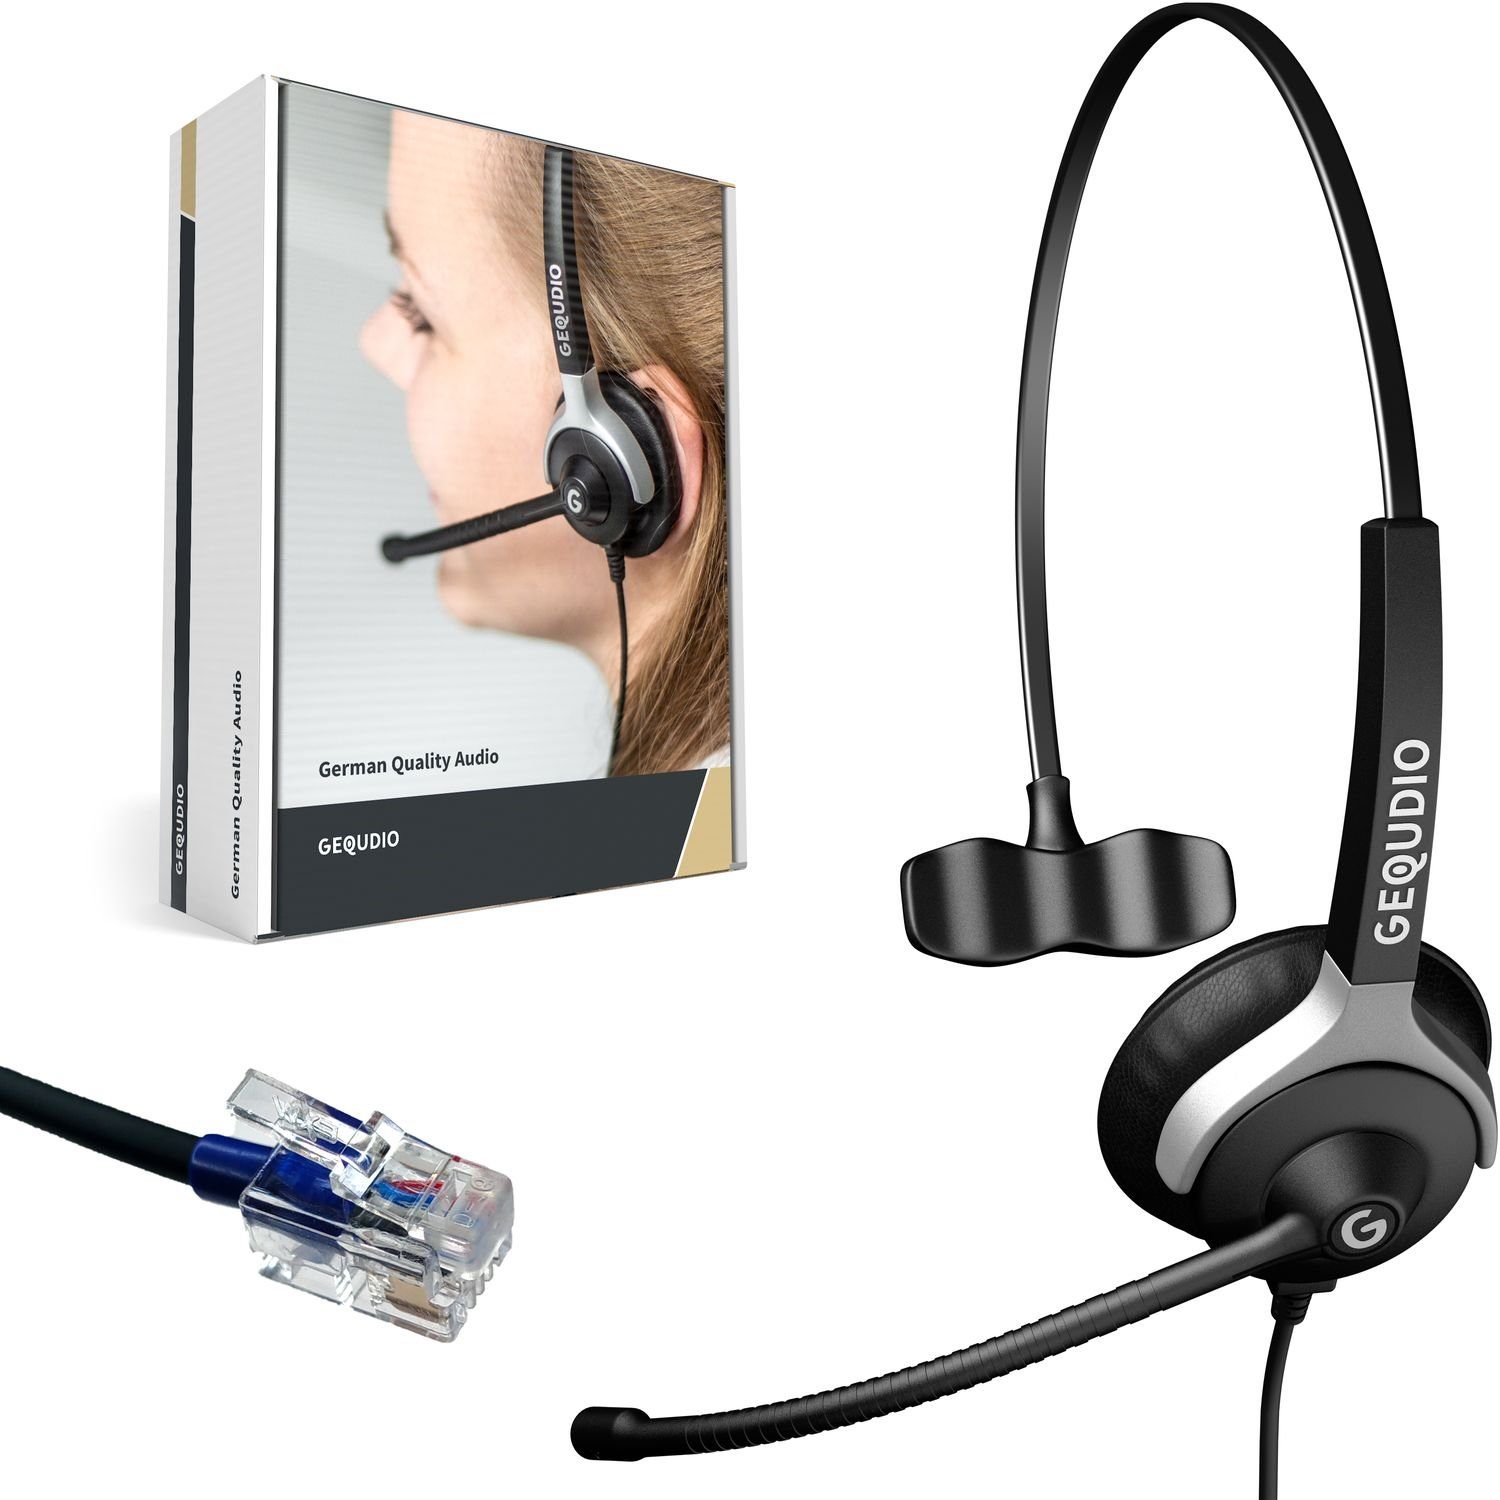 GEQUDIO Cisco Telefone mit RJ-Anschluss Headset (1-Ohr-Headset, 60g leicht,  Bügel aus Federstahl, mit Wechselverschluss für mehrere Endgeräte,  inklusive Anschlusskabel)